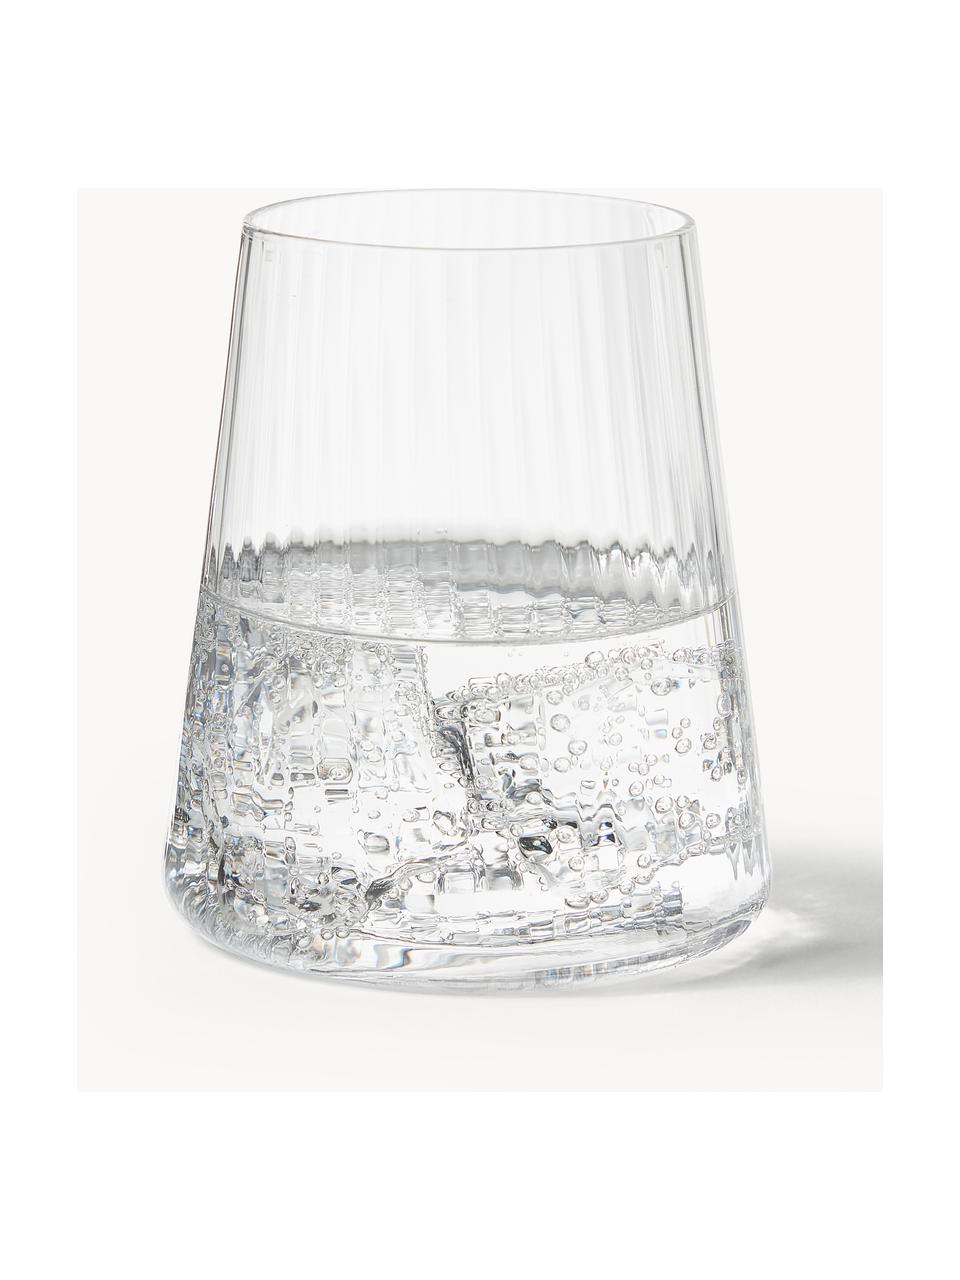 Handgefertigte Wassergläser Cami mit Rillenstruktur, 4 Stück, Transparent, Ø 8 x H 10 cm, 320 ml